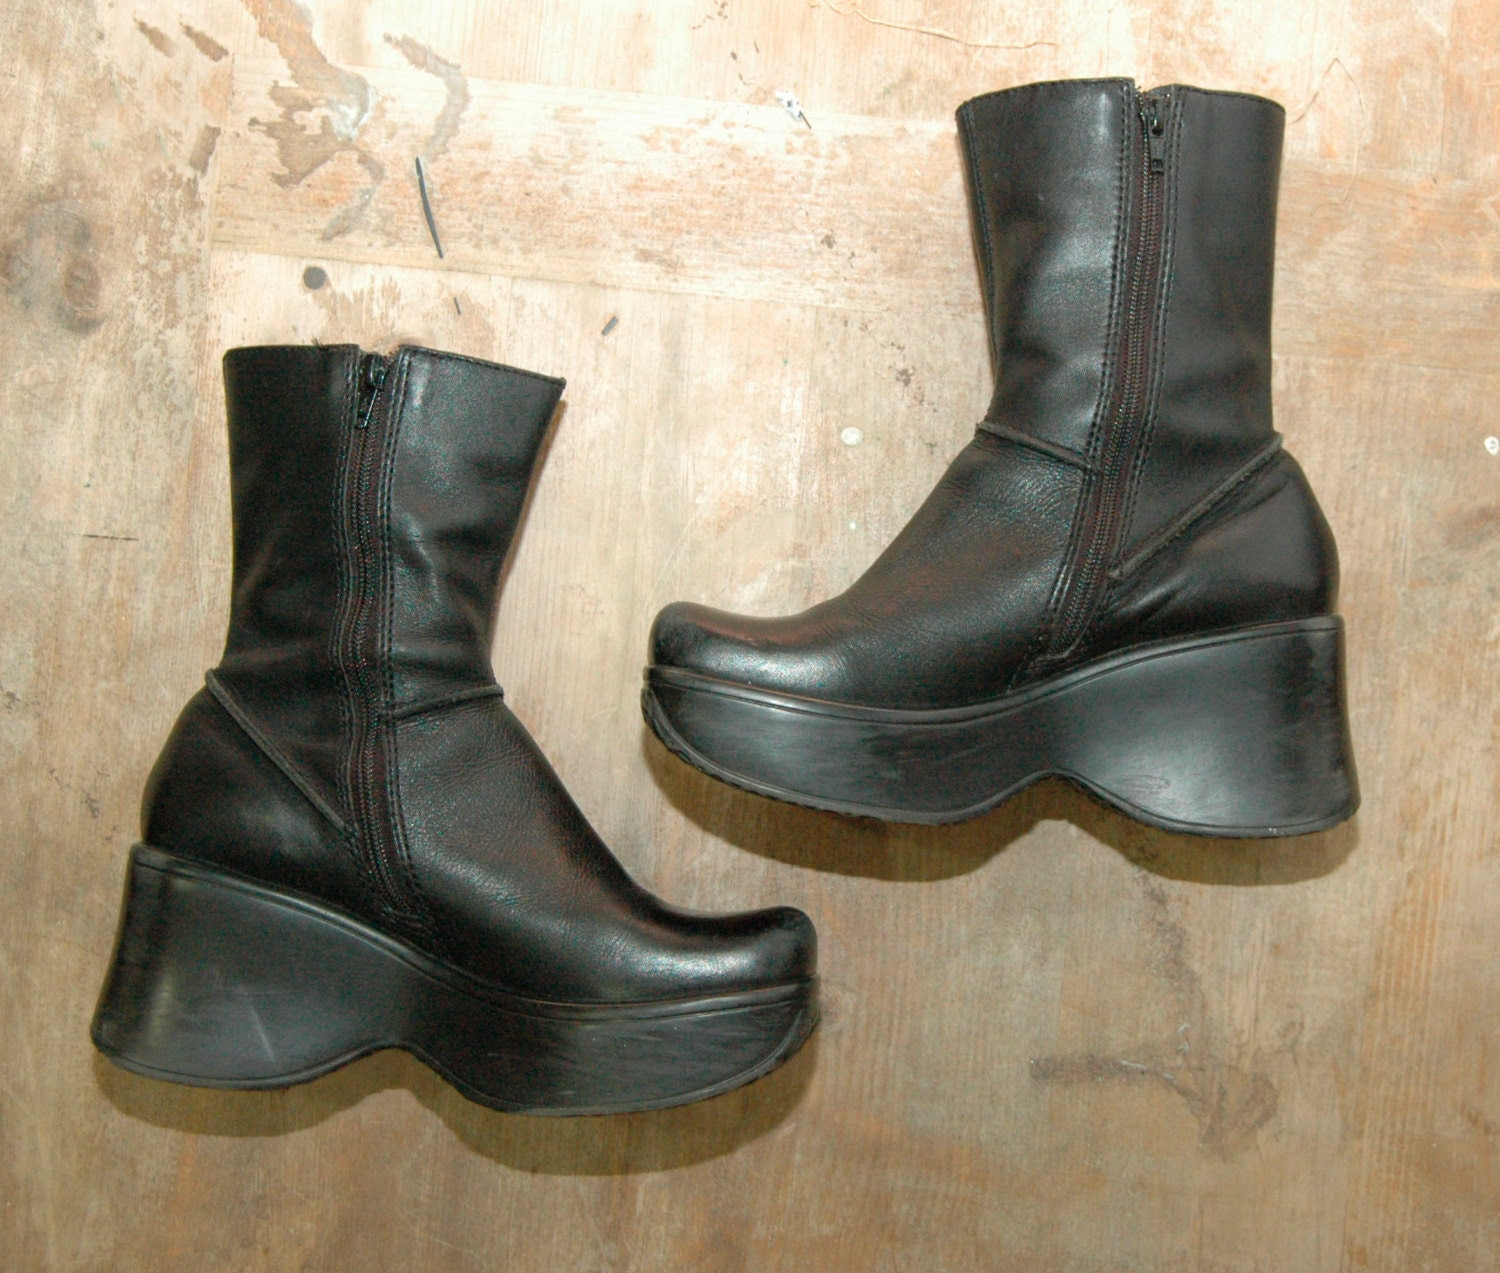 platform shoes Il_570xN.541989752_lbcw